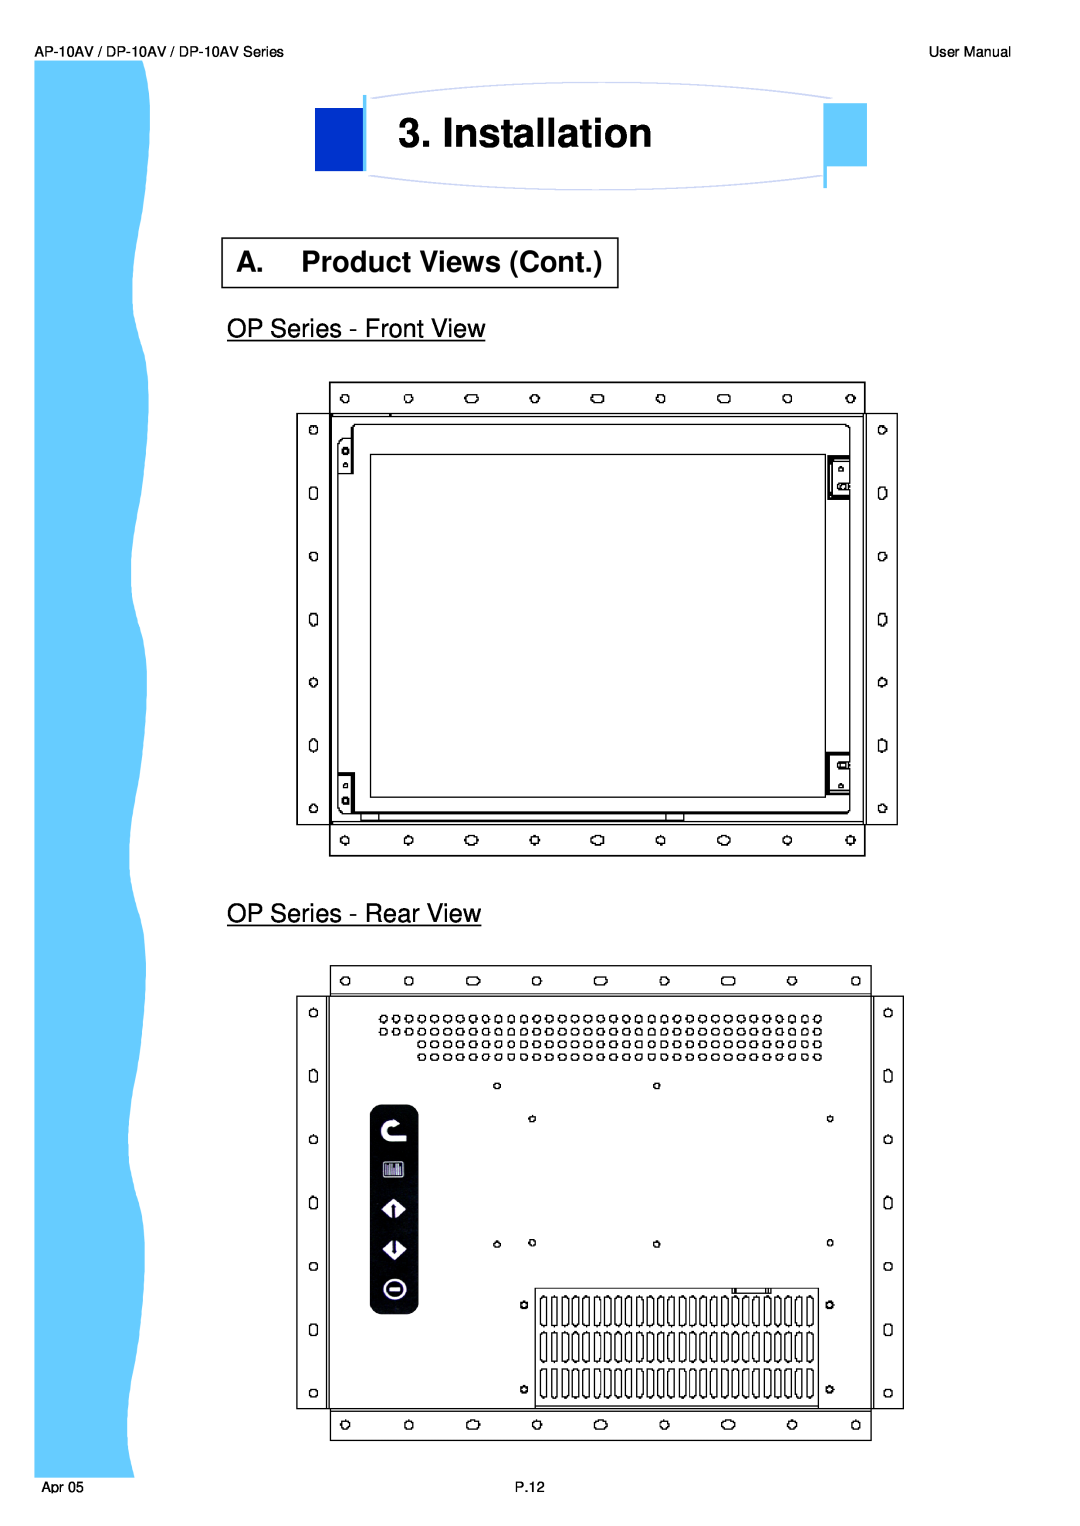 3M UMUV.10-045V2 user manual Installation, A. Product Views Cont, AP-10AV / DP-10AV / DP-10AV Series, User Manual, P.12 